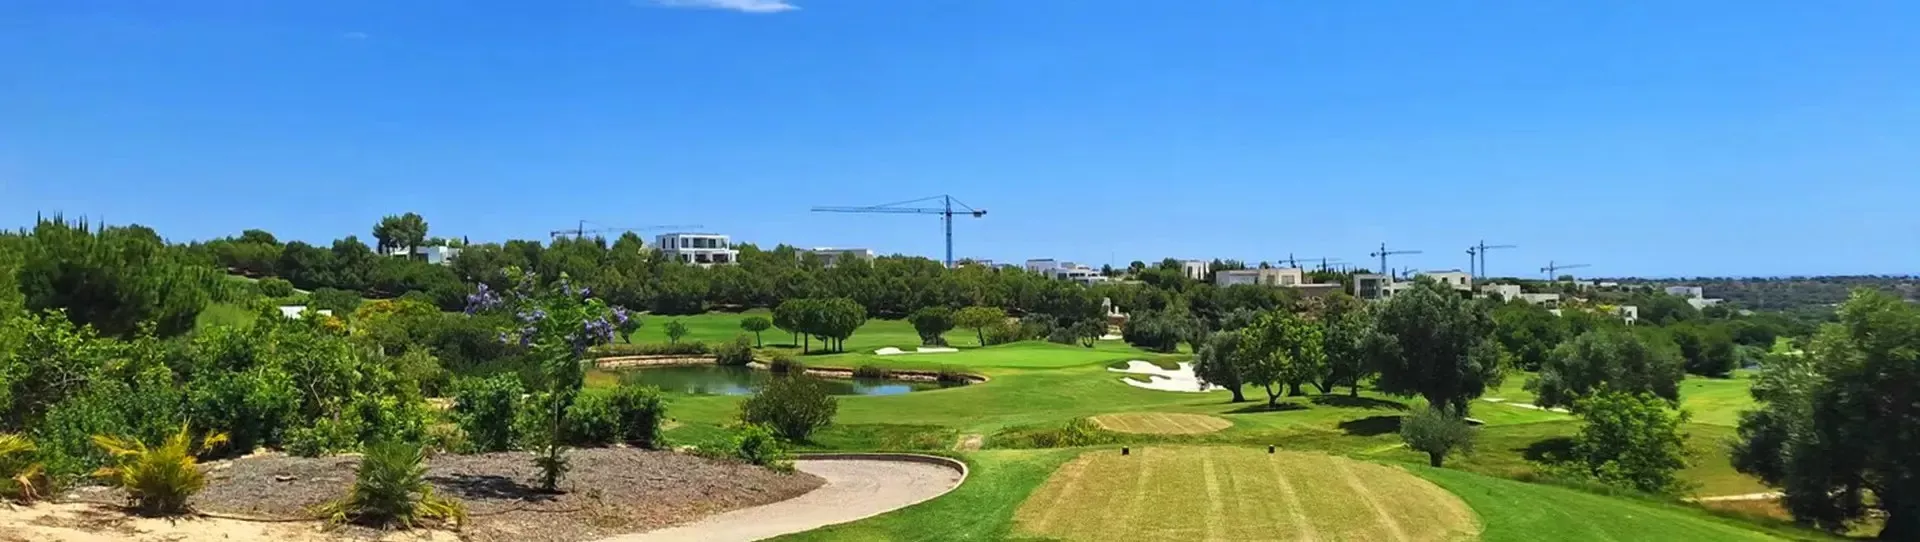 Spain golf courses - Las Ramblas - Photo 1